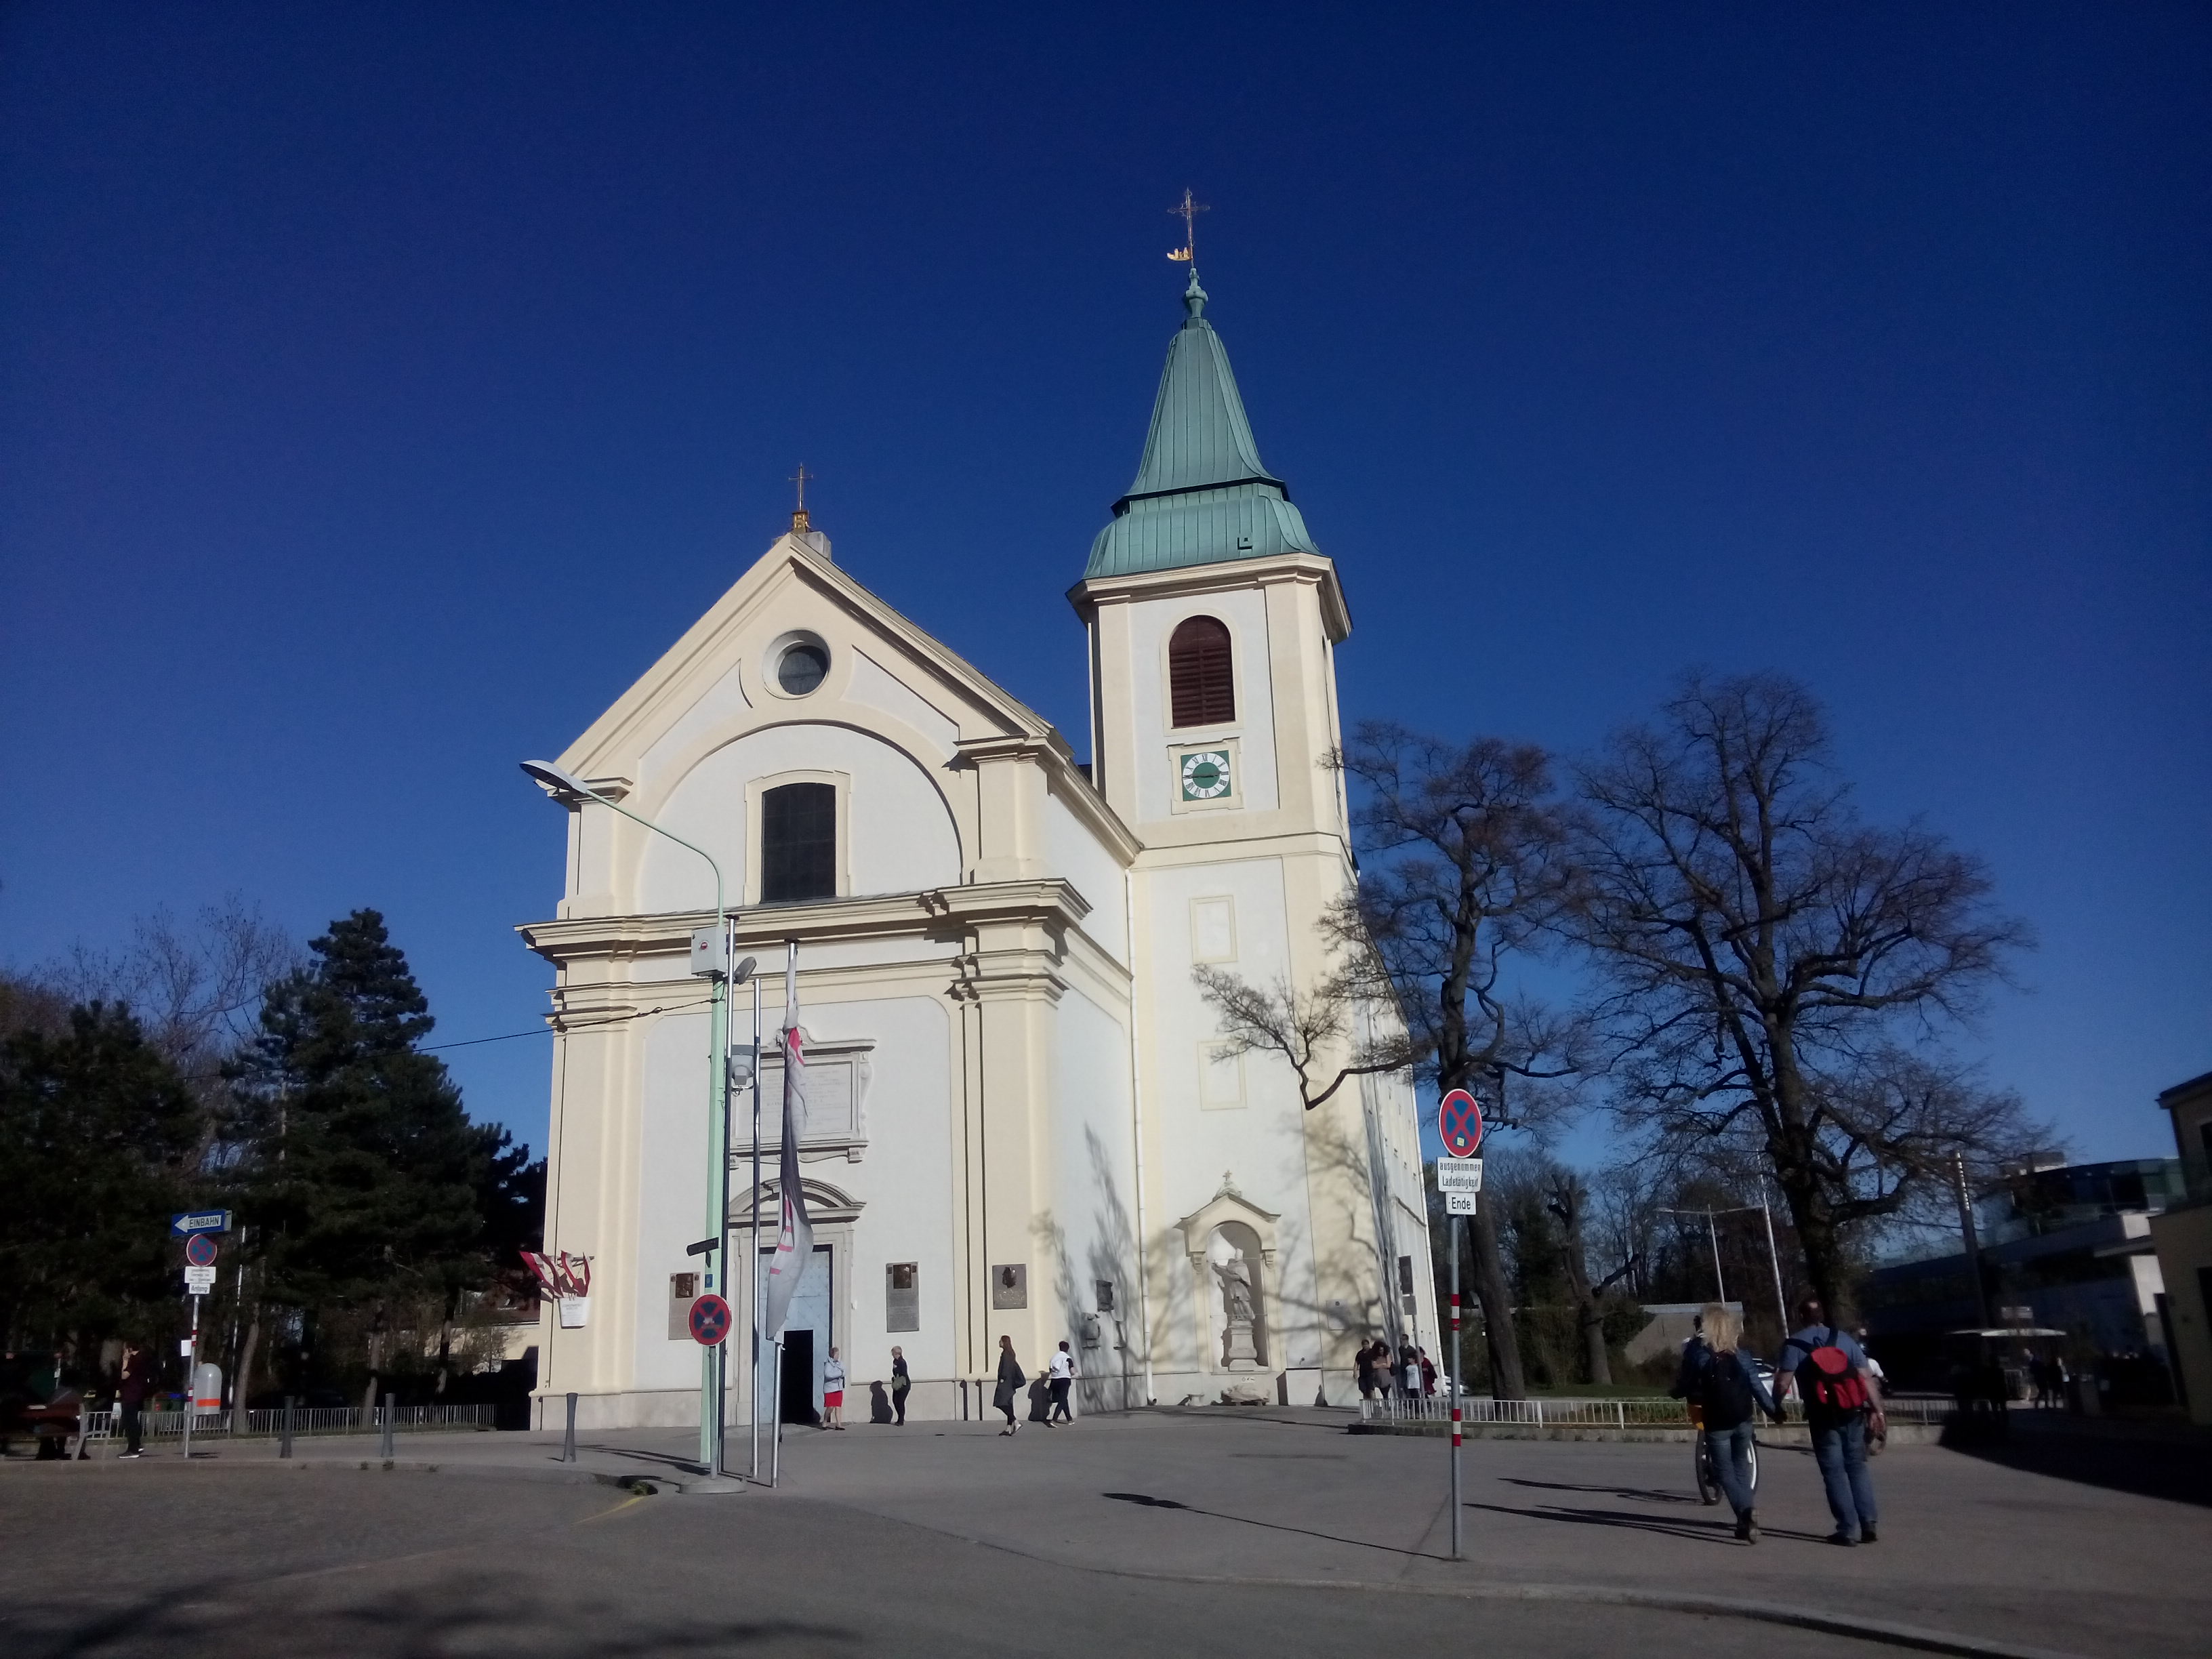 A white church against a stark blue sky